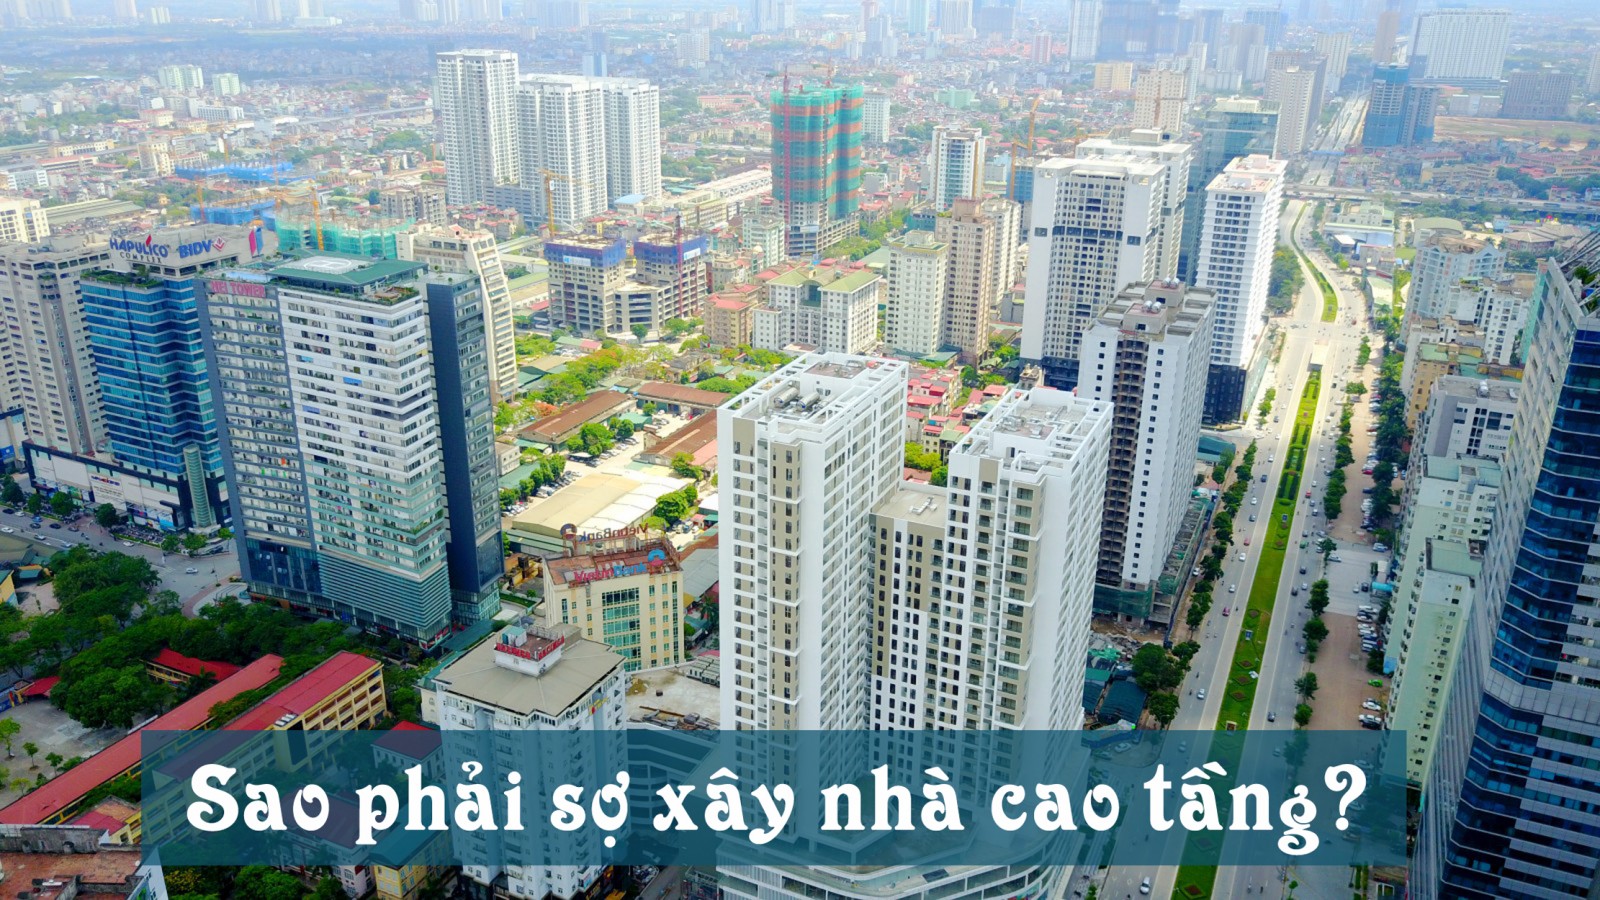 sự xuất hiện nhà cao tầng trong nội đô cũng được xem là điểm nhấn làm thay đổi hẳn bộ mặt và đời sống đô thị thành phố.